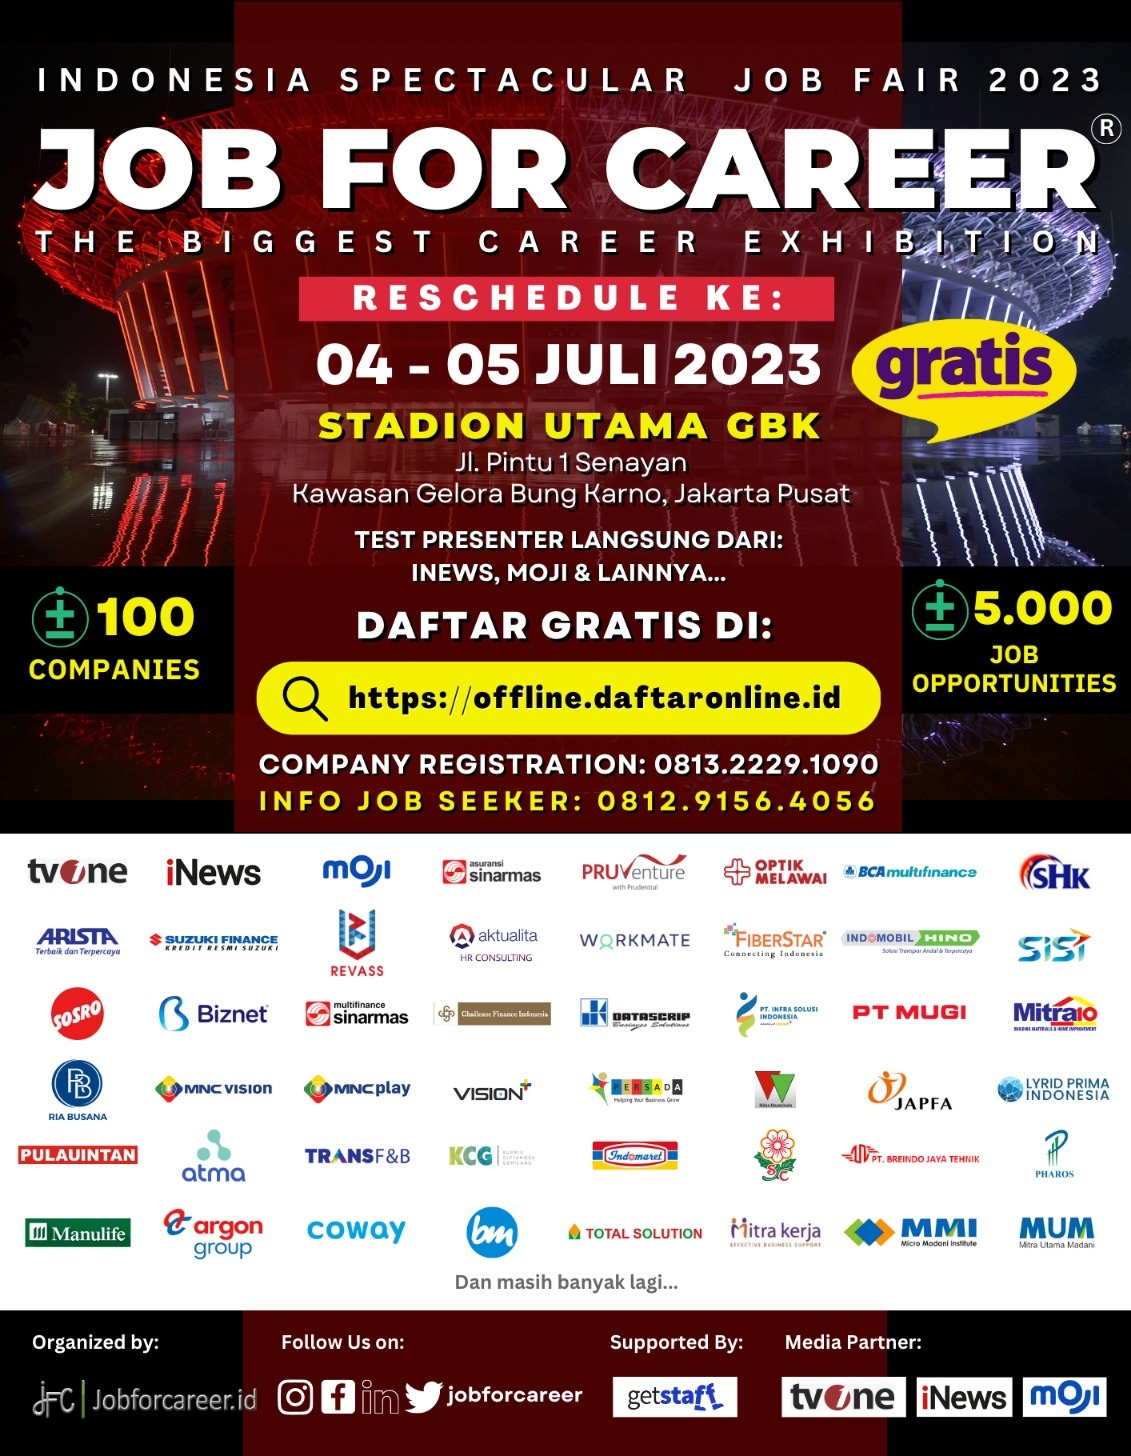 Spectacular Job Fair “JOB FOR CAREER” 2023